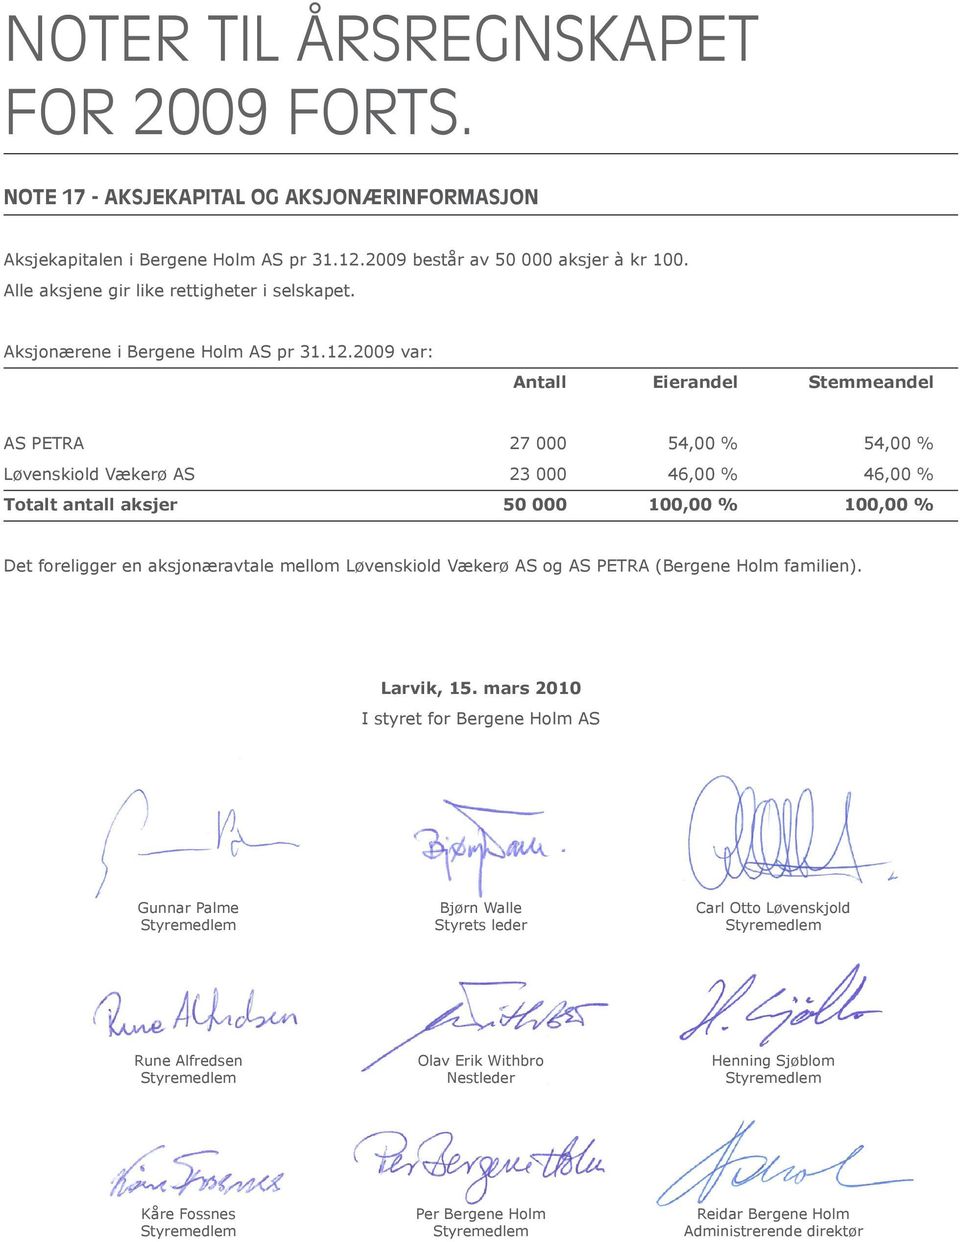 2009 var: Antall Eierandel Stemmeandel AS PETRA 27 000 54,00 % 54,00 % Løvenskiold Vækerø AS 23 000 46,00 % 46,00 % Totalt antall aksjer 50 000 100,00 % 100,00 % Det foreligger en aksjonæravtale